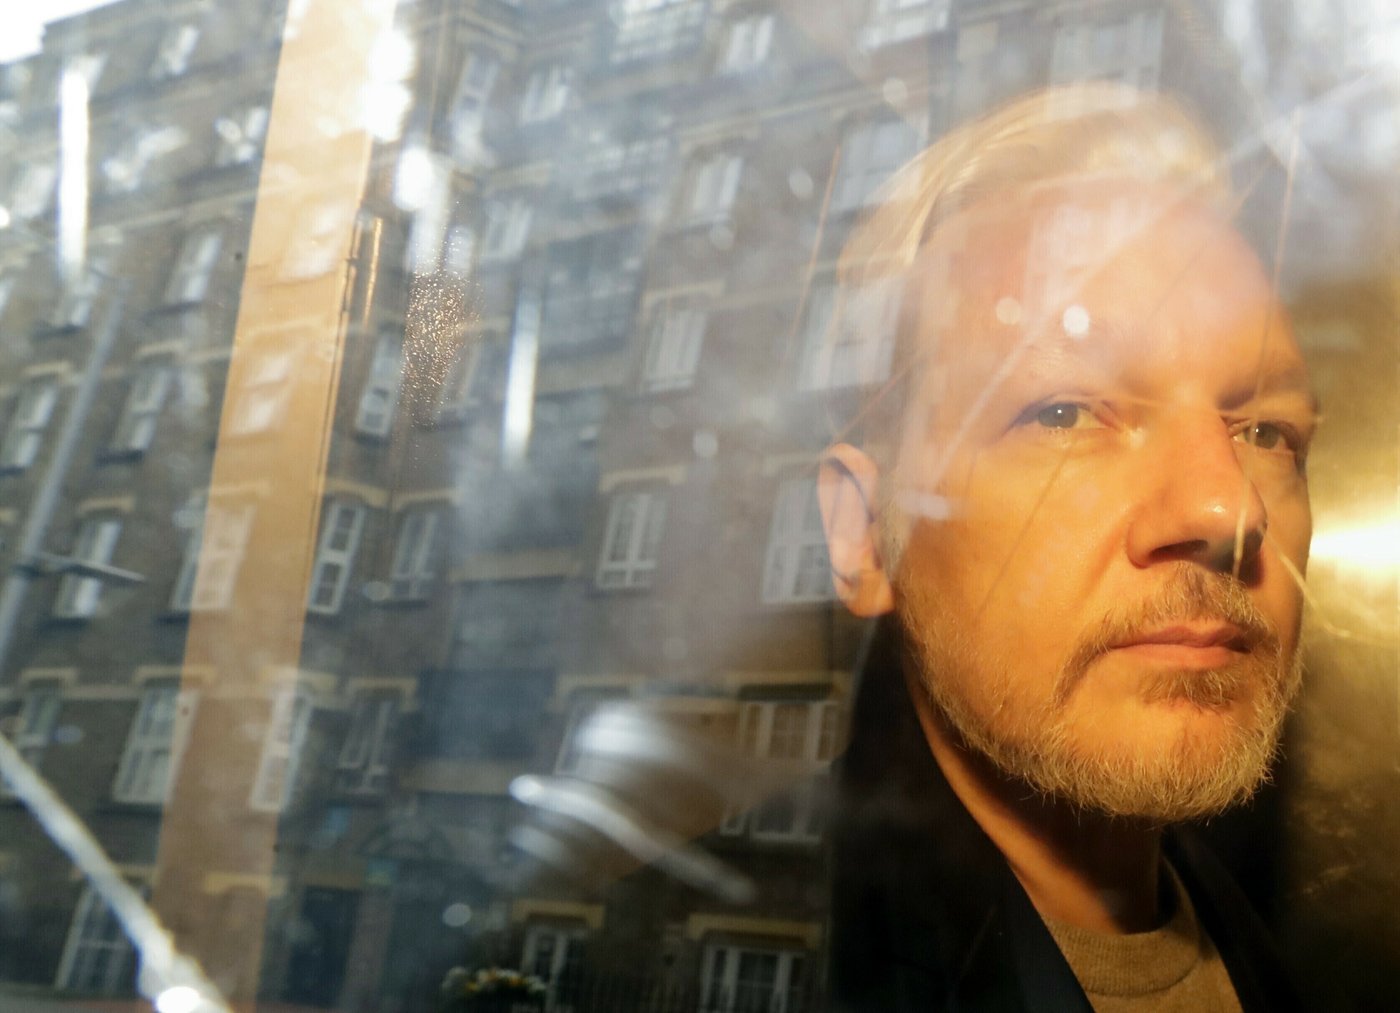 Julian Assange, fondateur de WikiLeaks, aurait trouvé un accord avec Washington